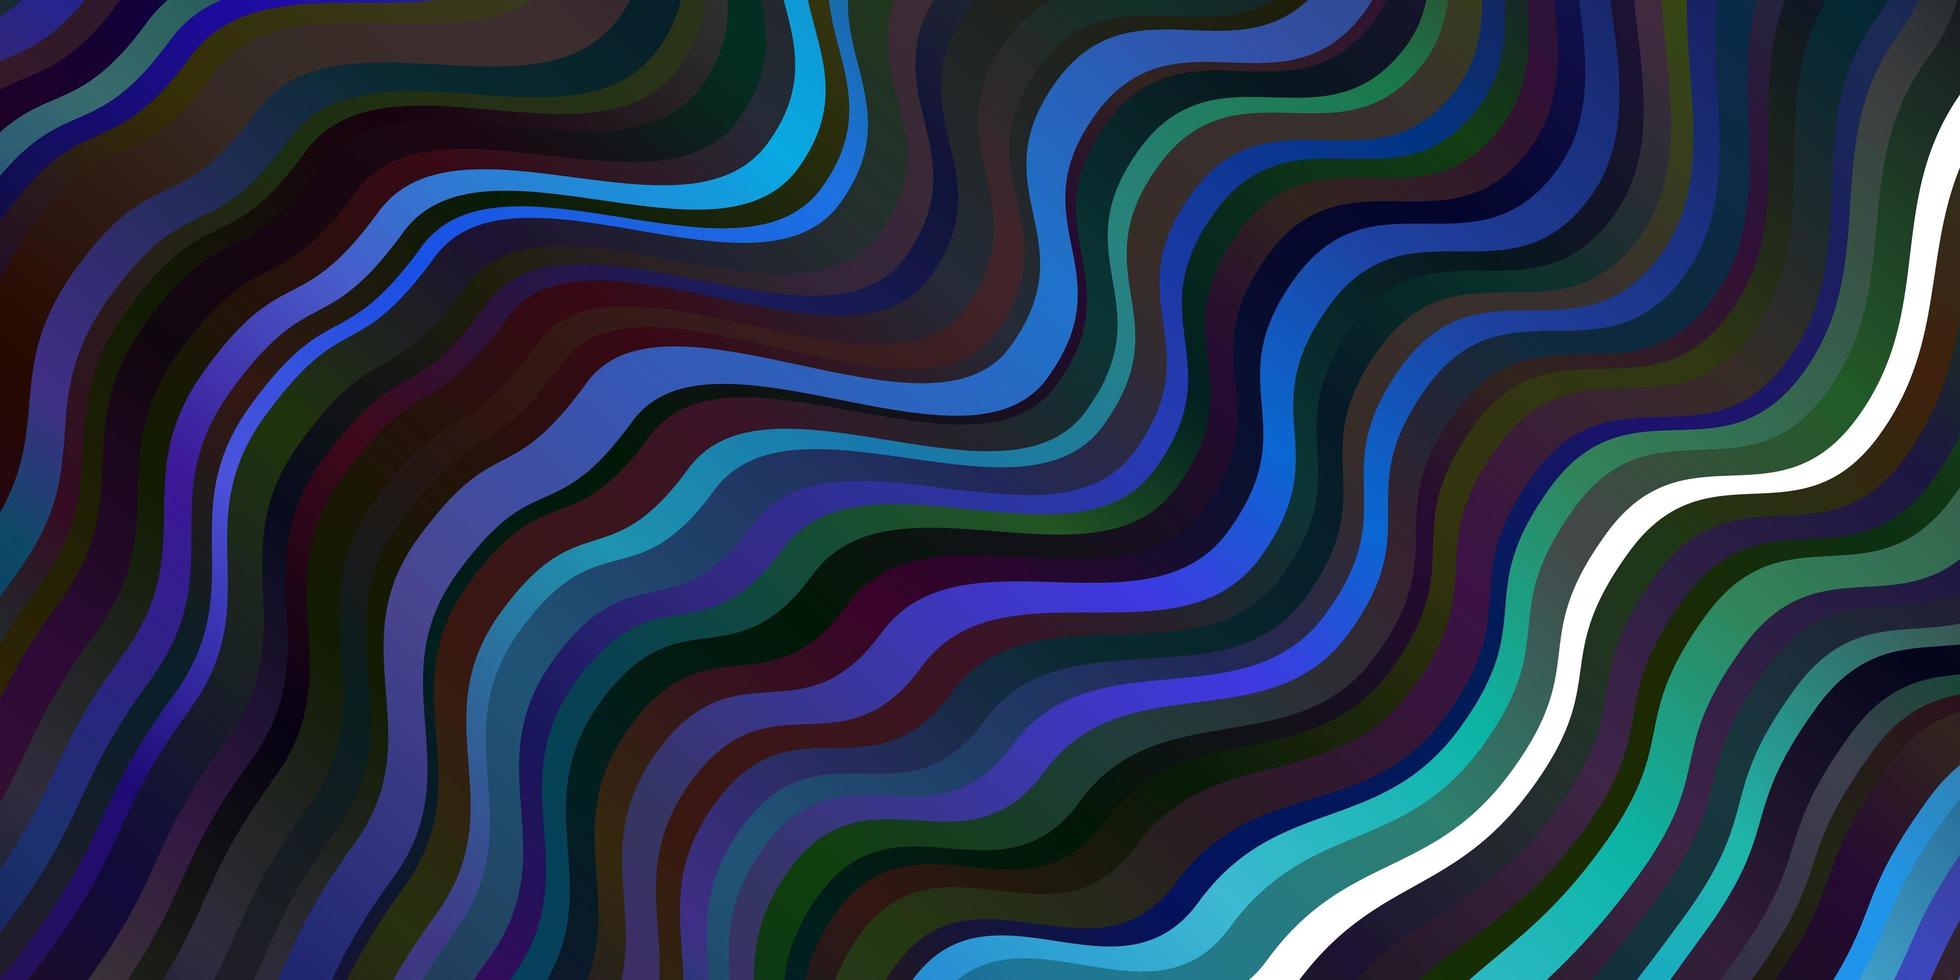 mörk flerfärgad vektorbakgrund med böjda linjer. vektor